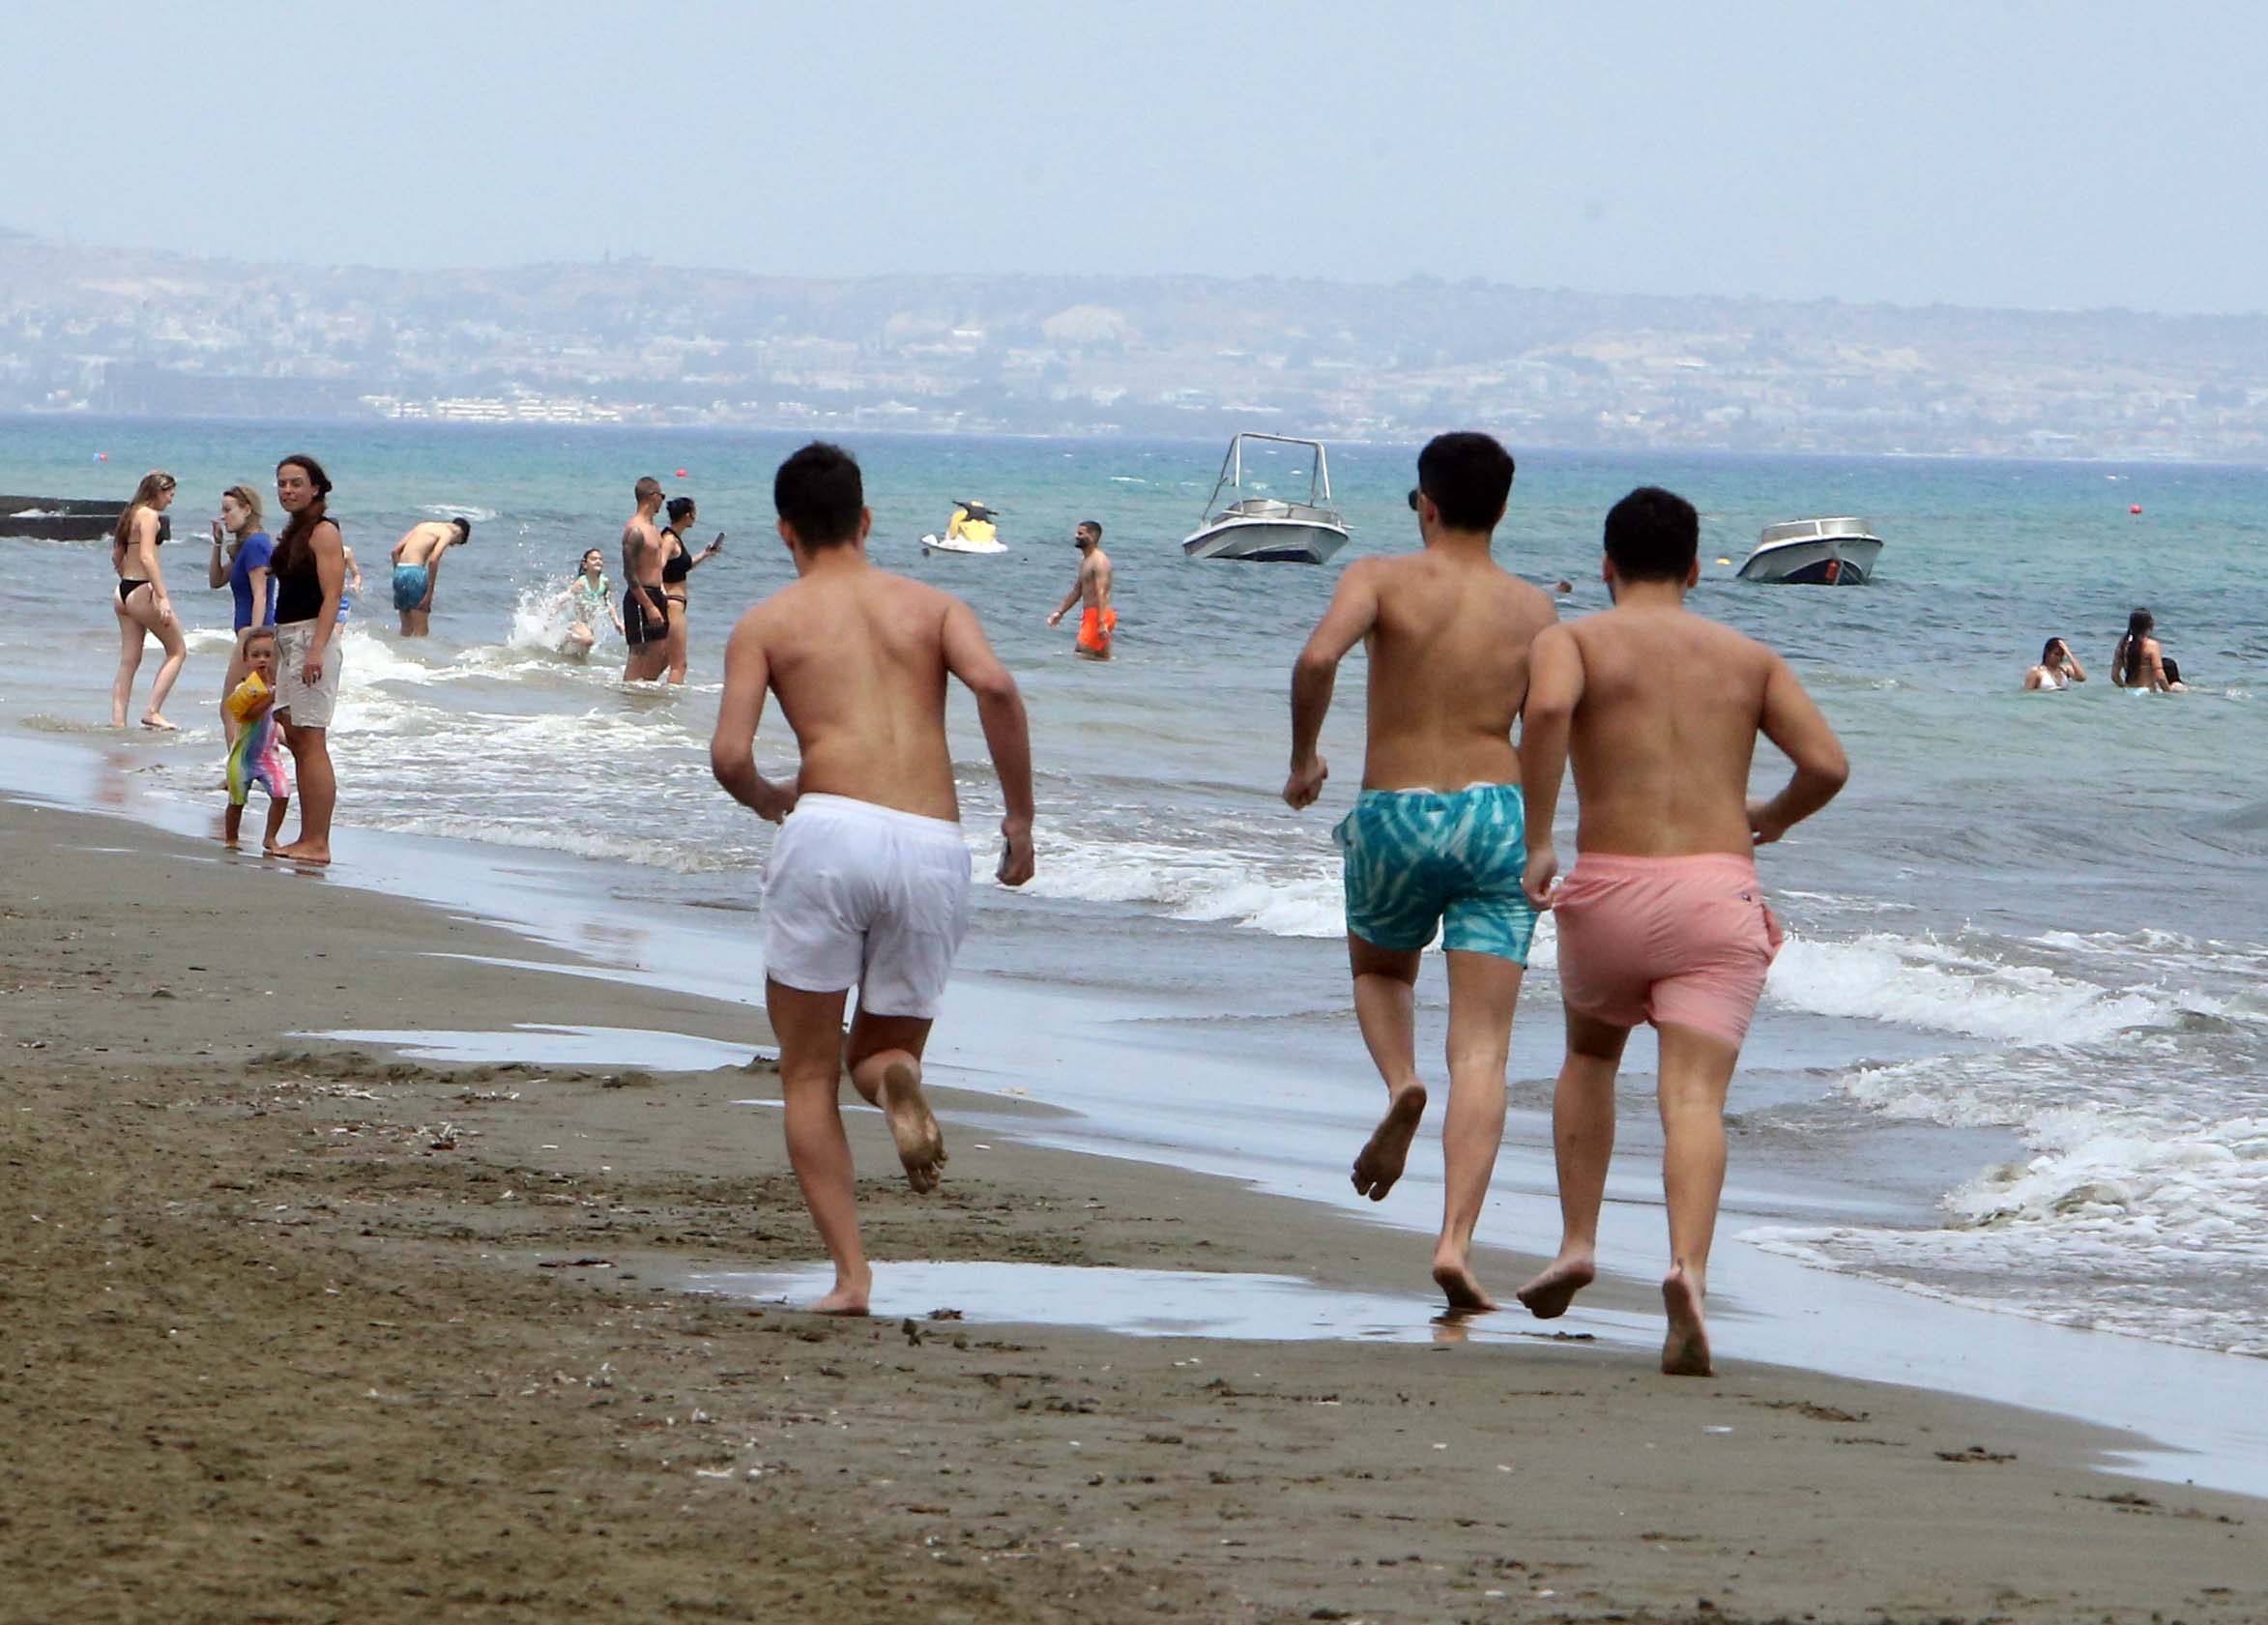 Cyprus has best quality bathing waters in Europe